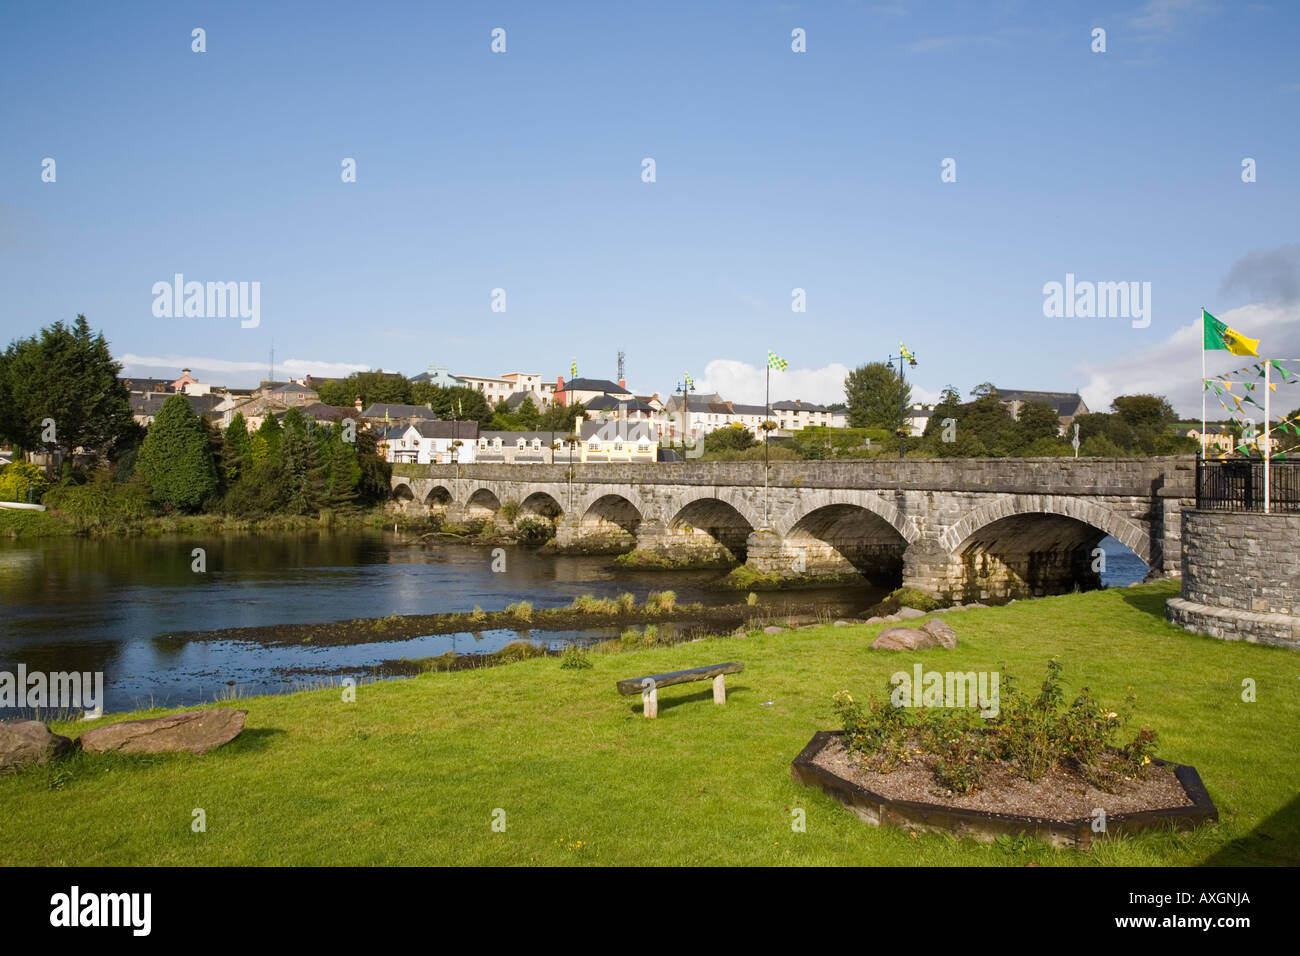 La ville de Killorglin et pont du chemin en pierre voûtée de jardins publics à travers Rivière Laune Co Kerry Eire Irlande Europe Banque D'Images